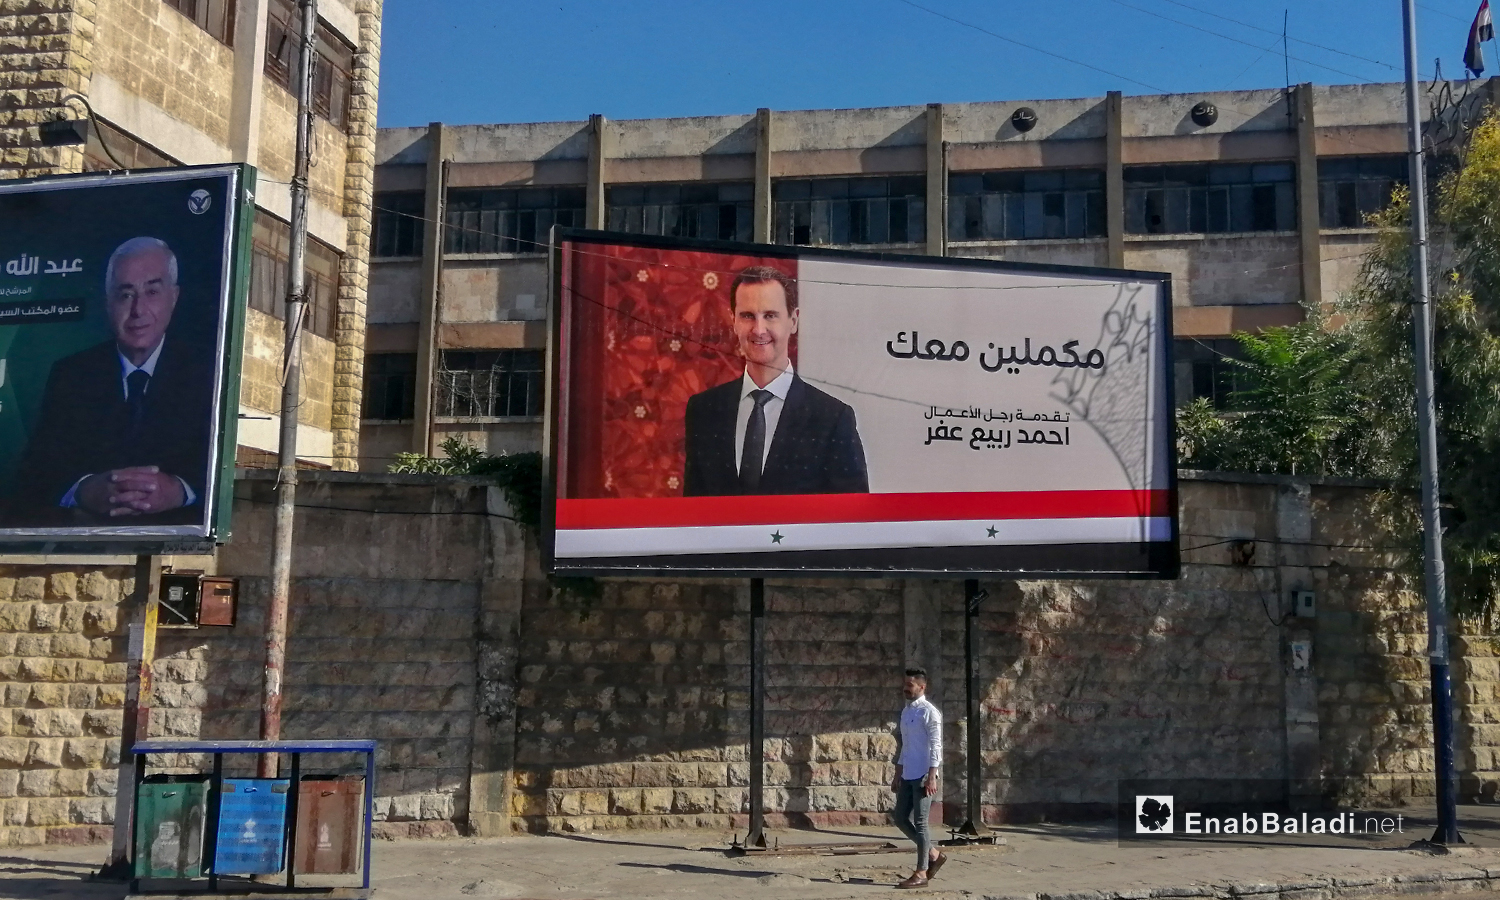 لوحة تخص حملة - رئيس النظام السوري بشار الأسد- الانتخابية في أحد شوارع مدينة حلب .أيار 2021 (عنب بلدي/ صابر الحلبي)